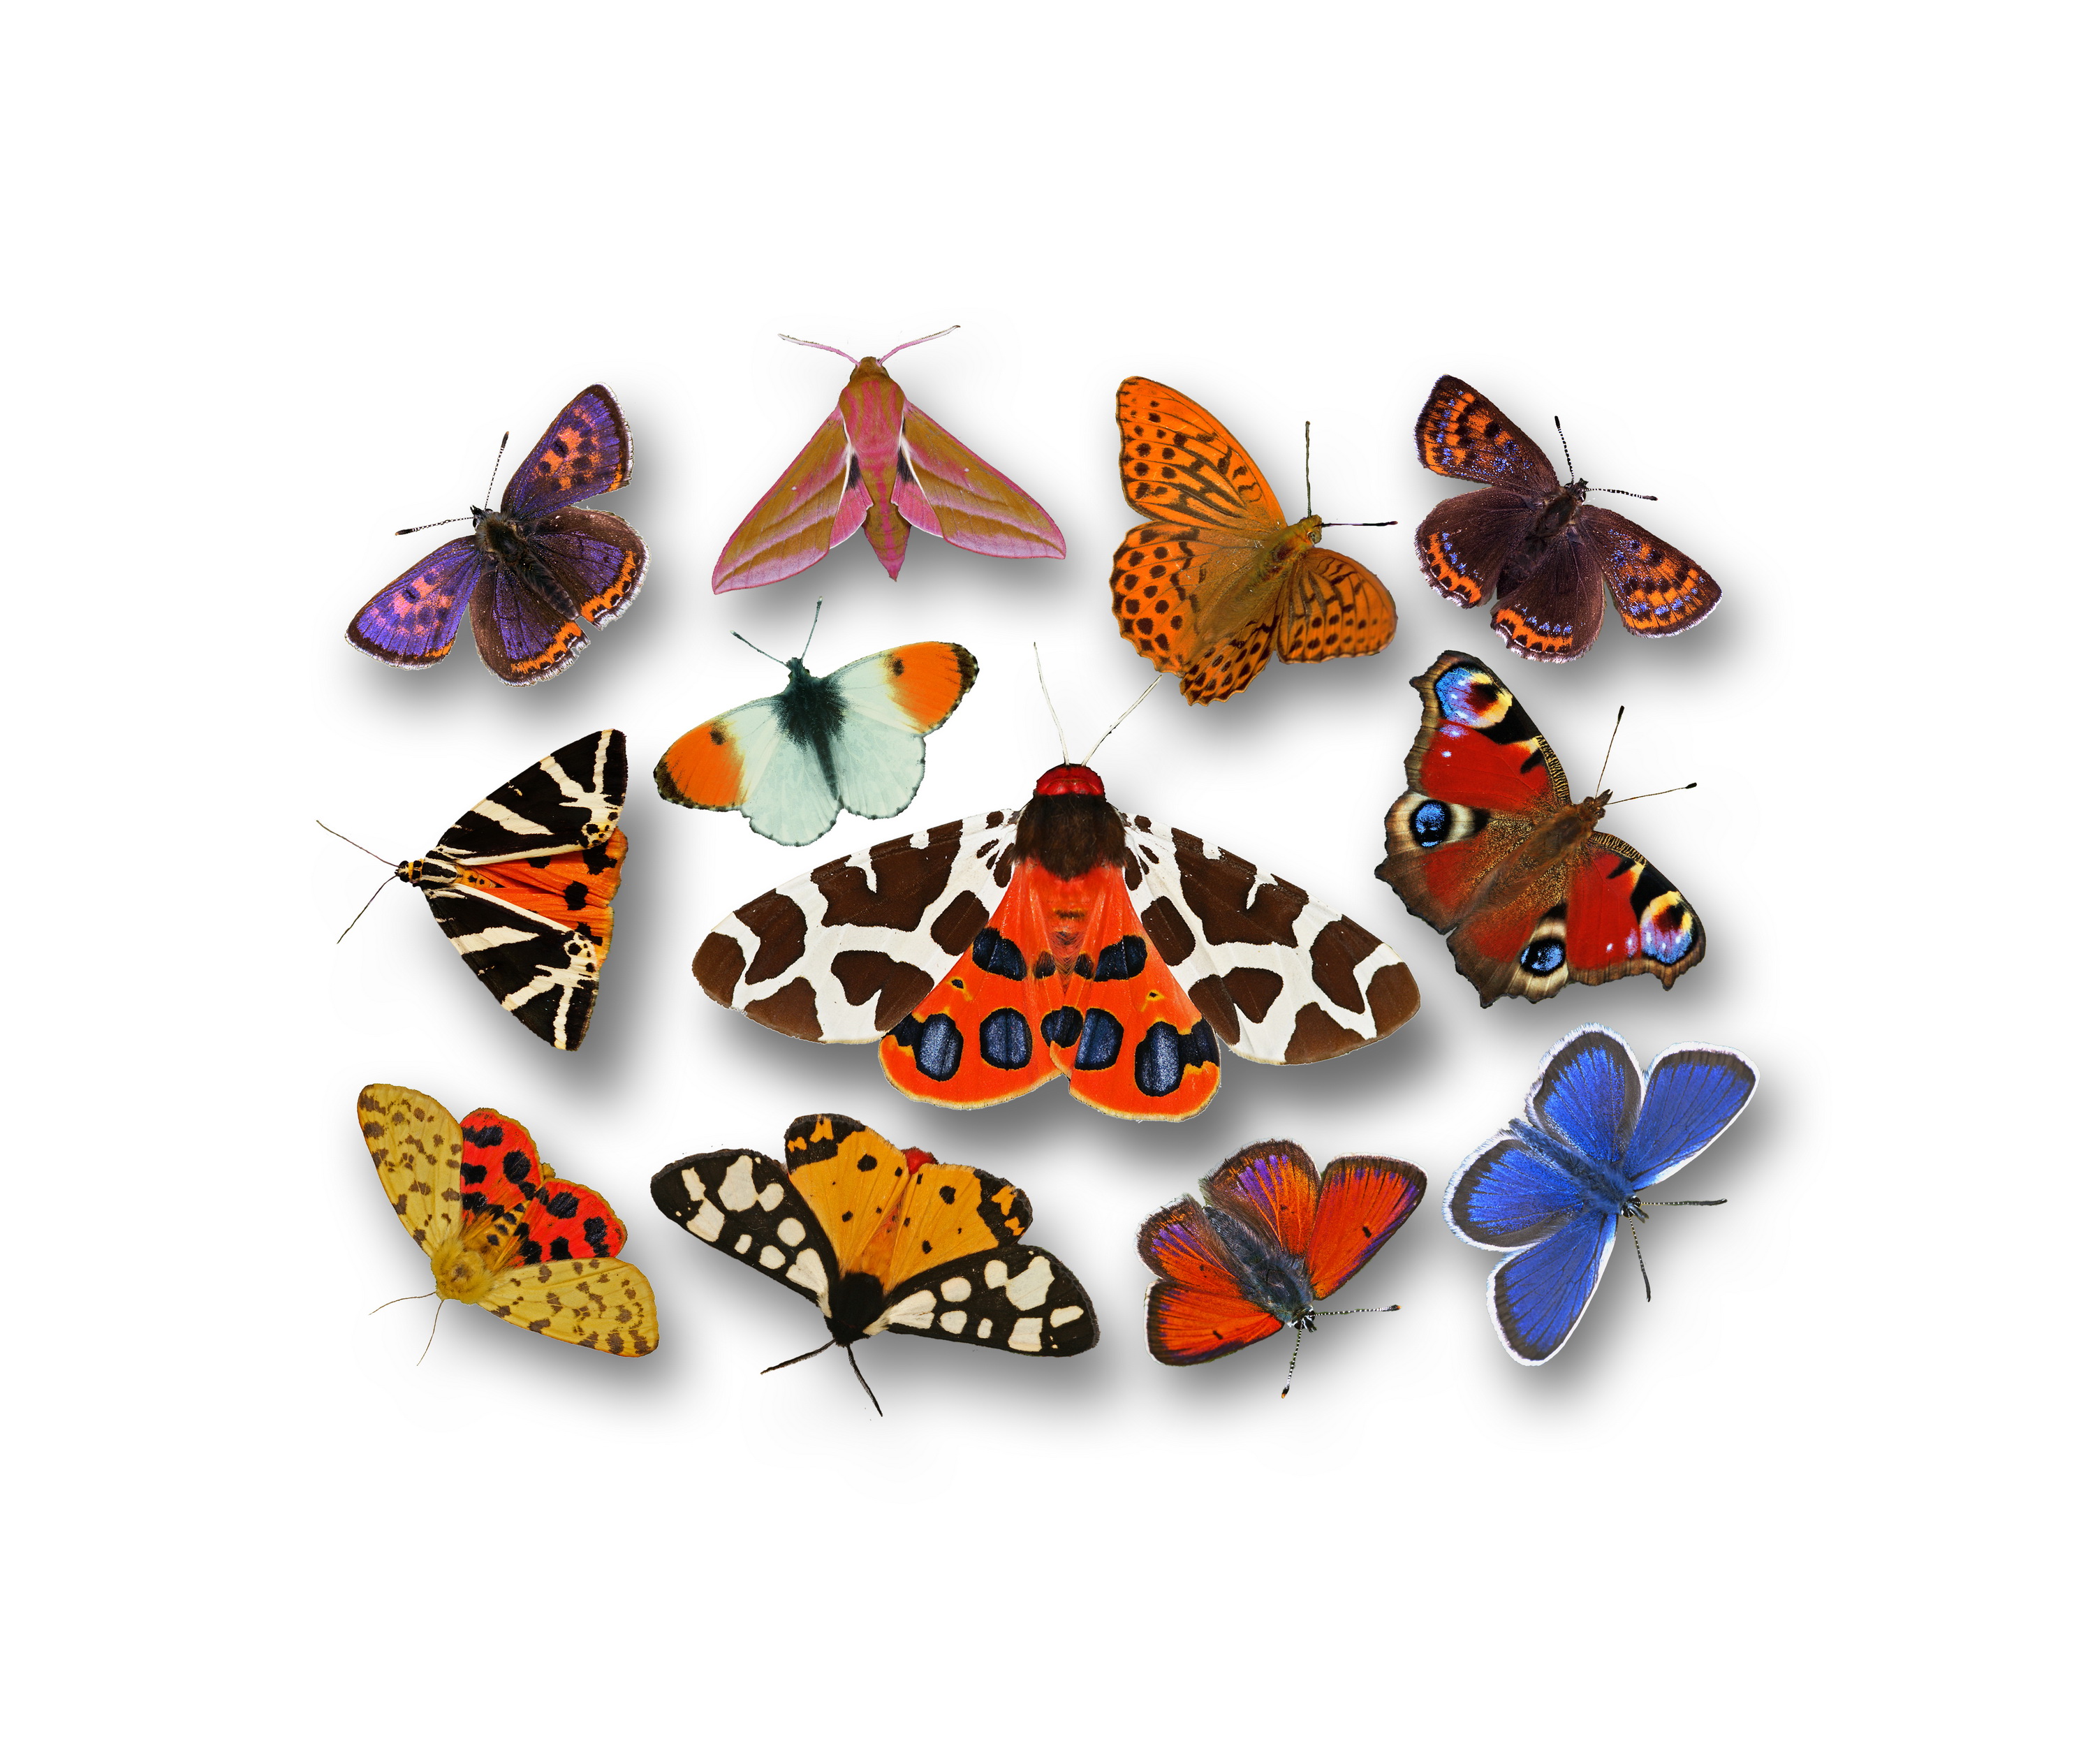 Brauner Schmetterling Mit Punkten - KibrisPDR